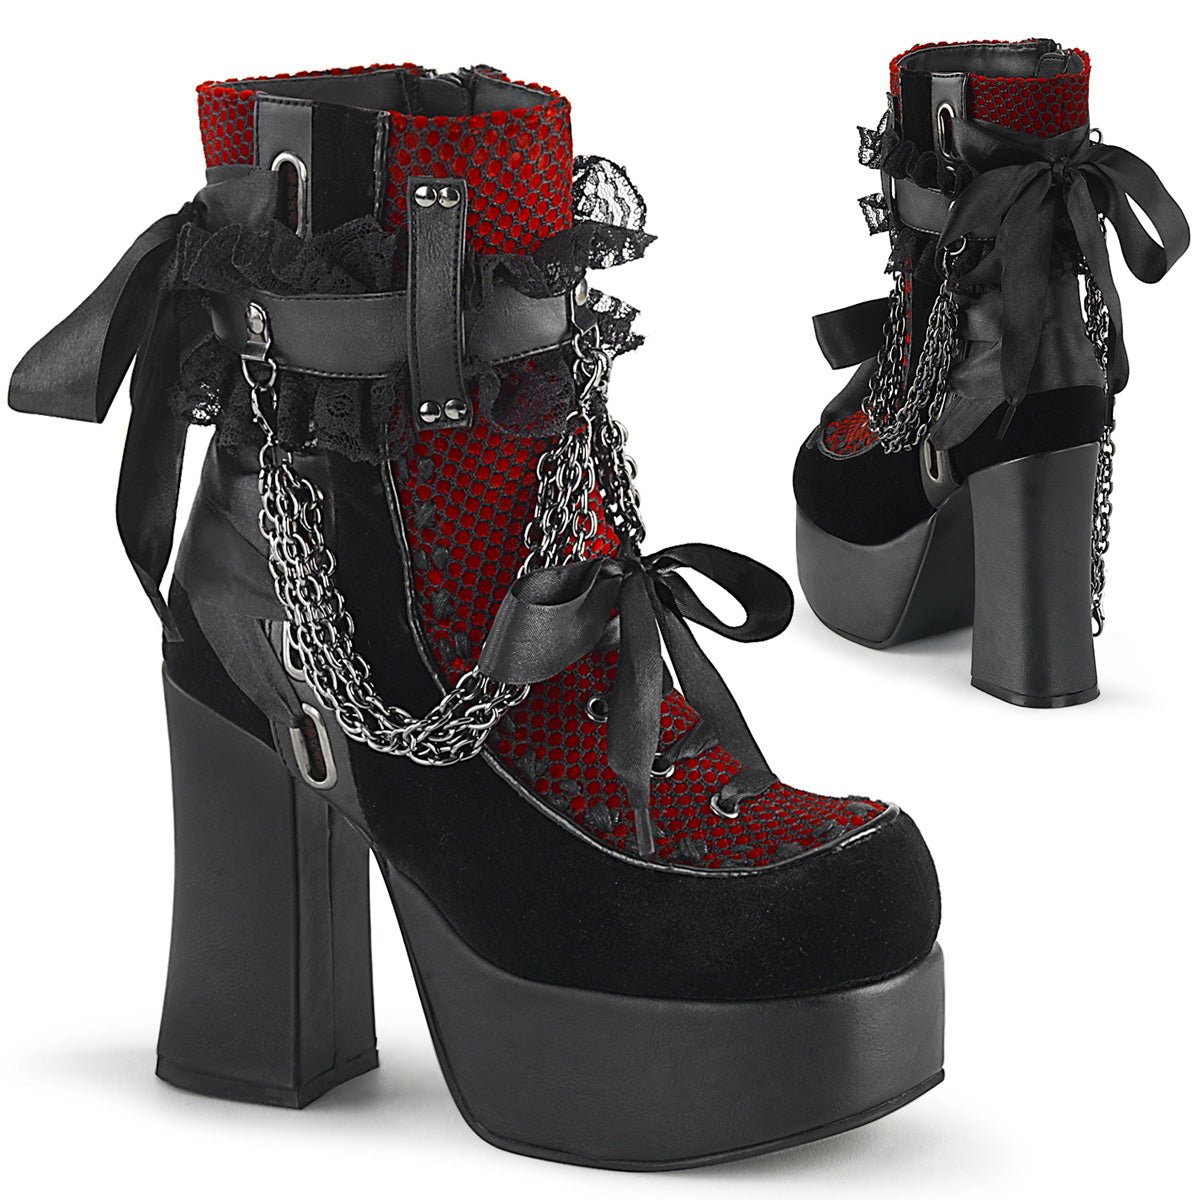 Too Fast | Demonia Charade 110 | Black & Red Vegan Leather, Velvet & Fishnet Overlay Women's Ankle Boots